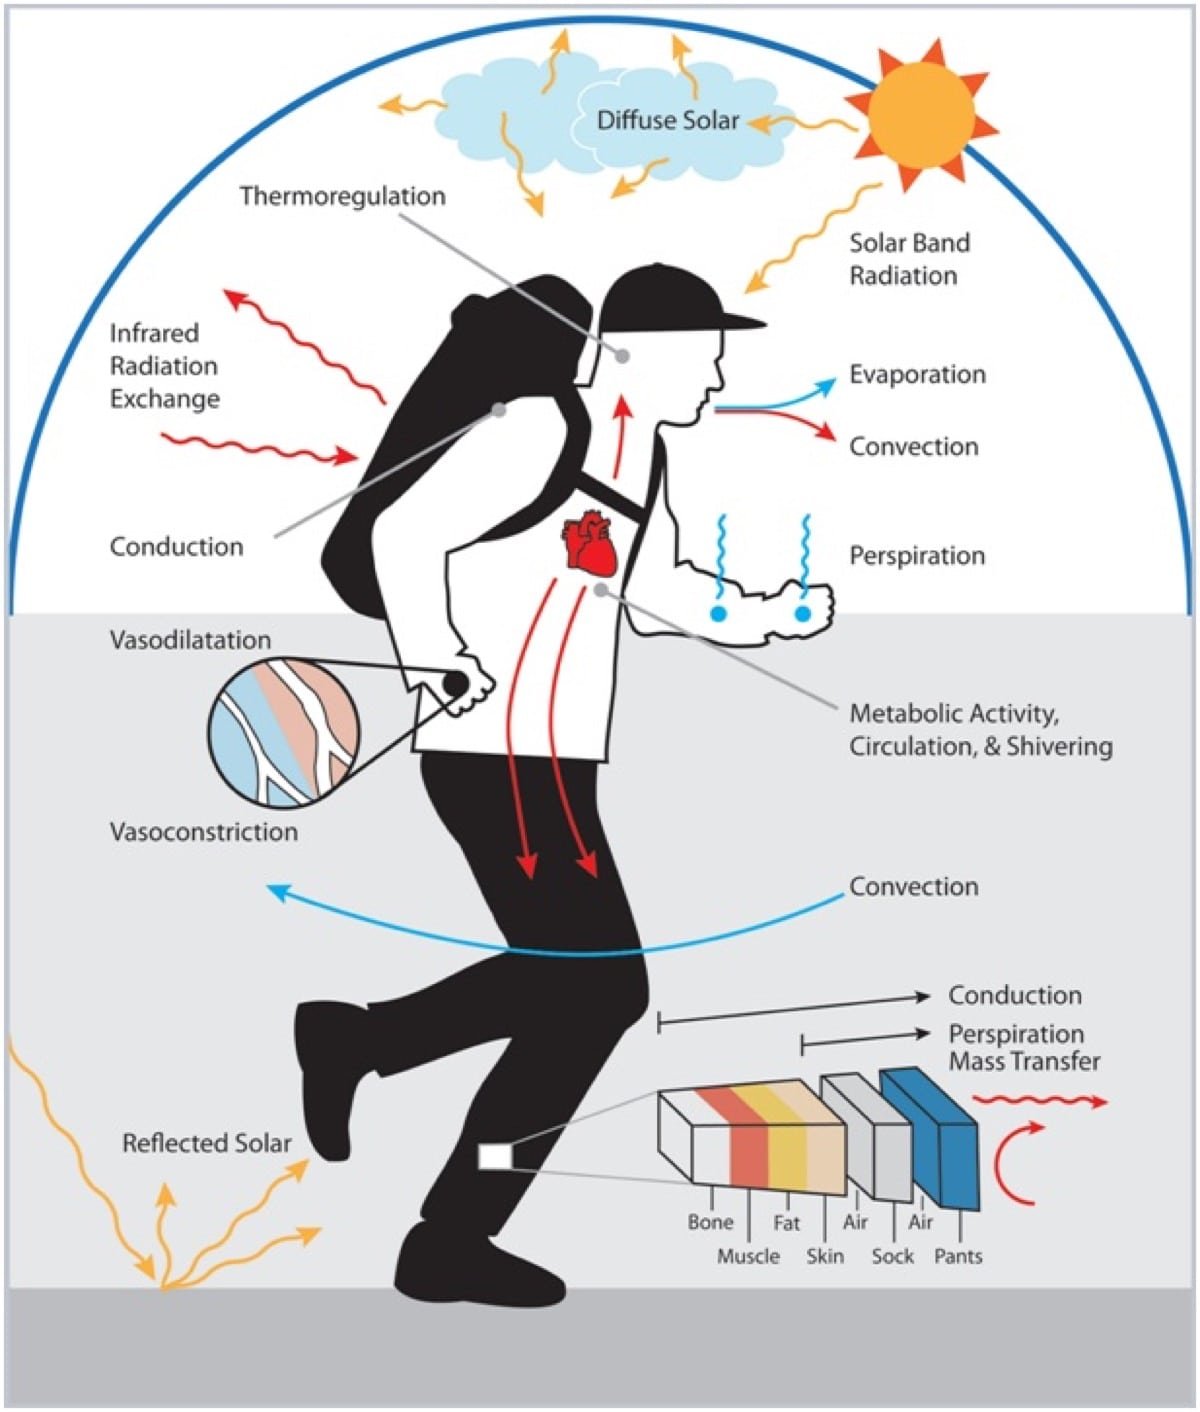 La física de la termorregulación y la transferencia de calor. Imagen cortesía de https://www.earthslab.com/physiology/thermoregulation-human-body/